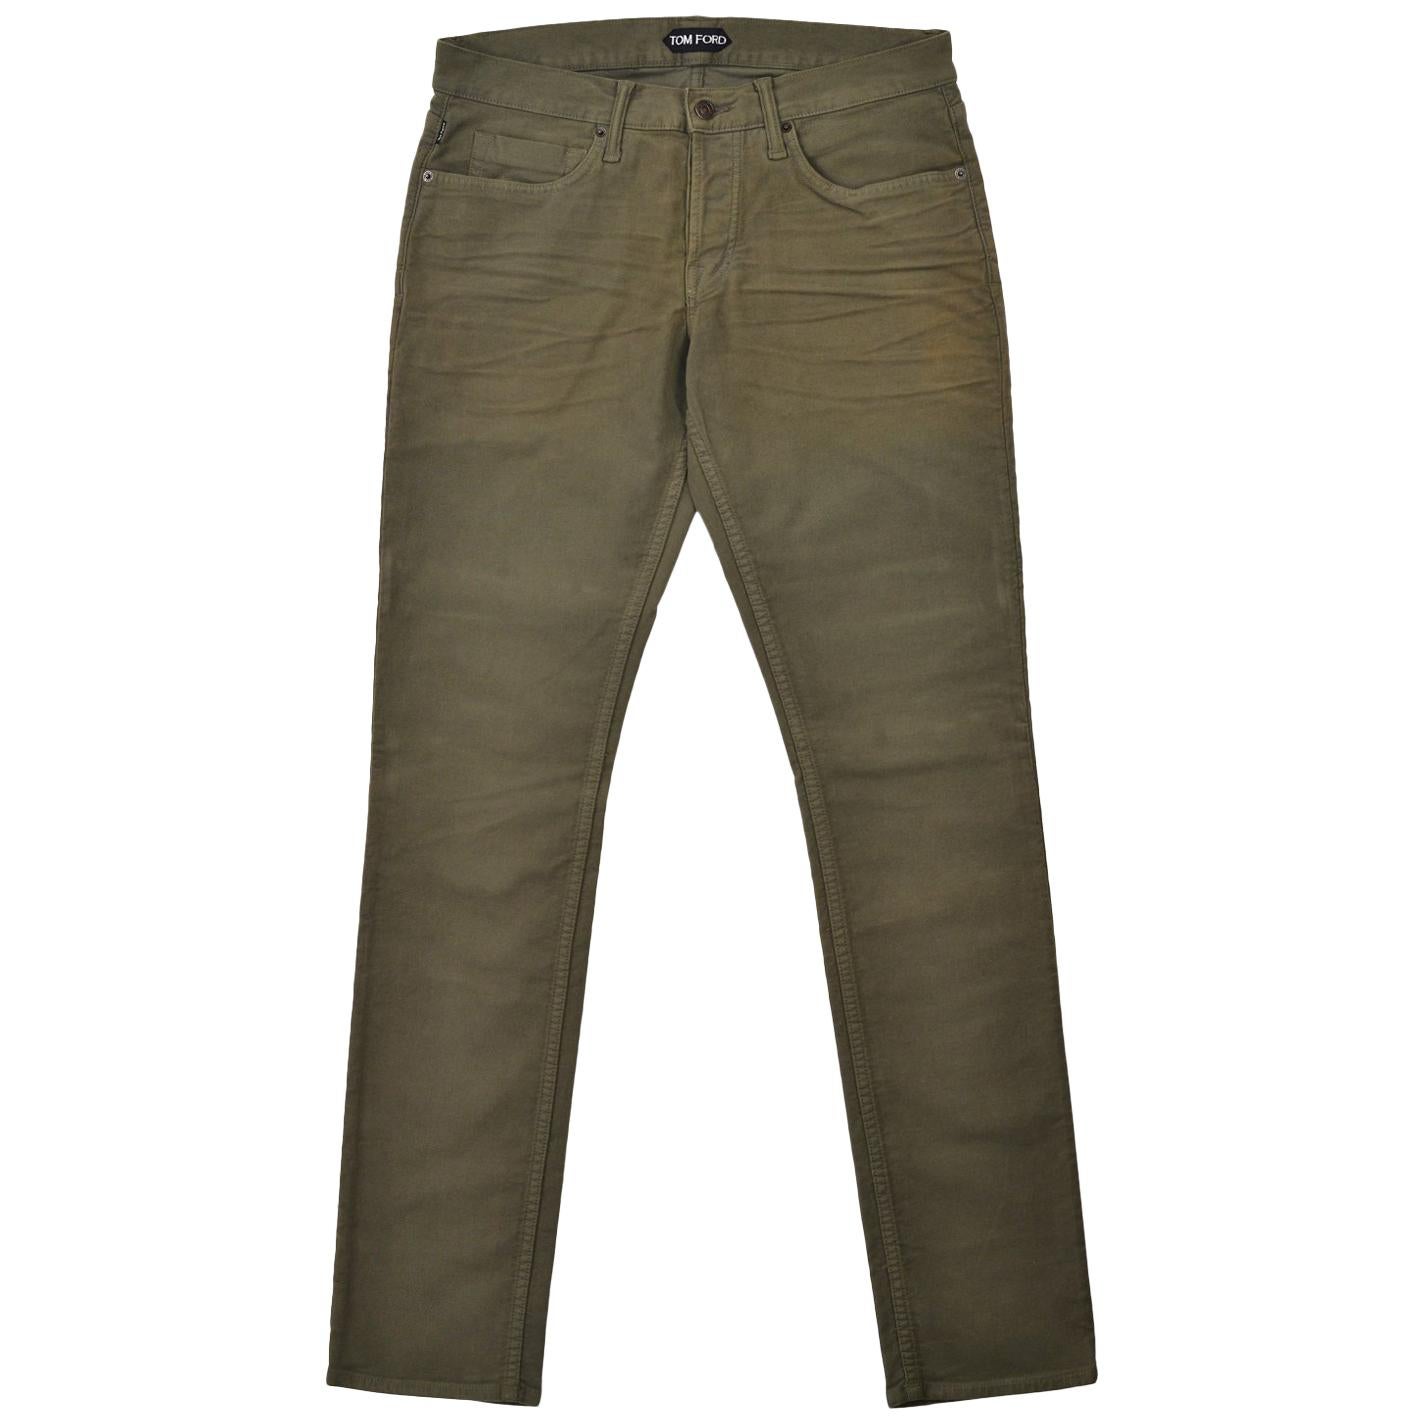 Tom Ford Men's Light Olive Green Cotton Slim Jeans For Sale